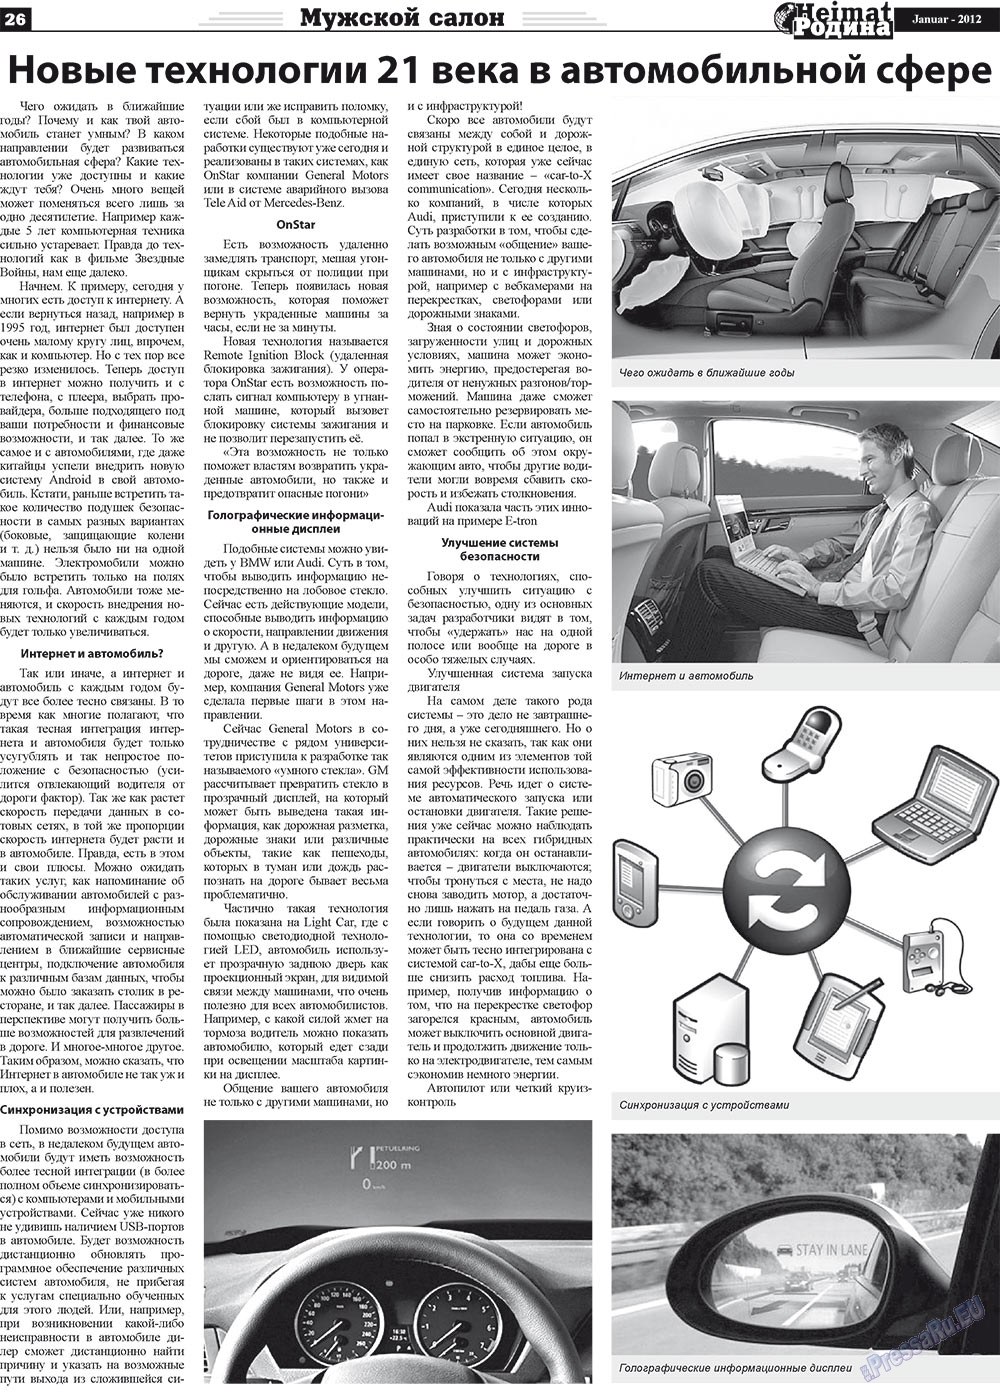 Heimat-Родина (газета). 2012 год, номер 1, стр. 26